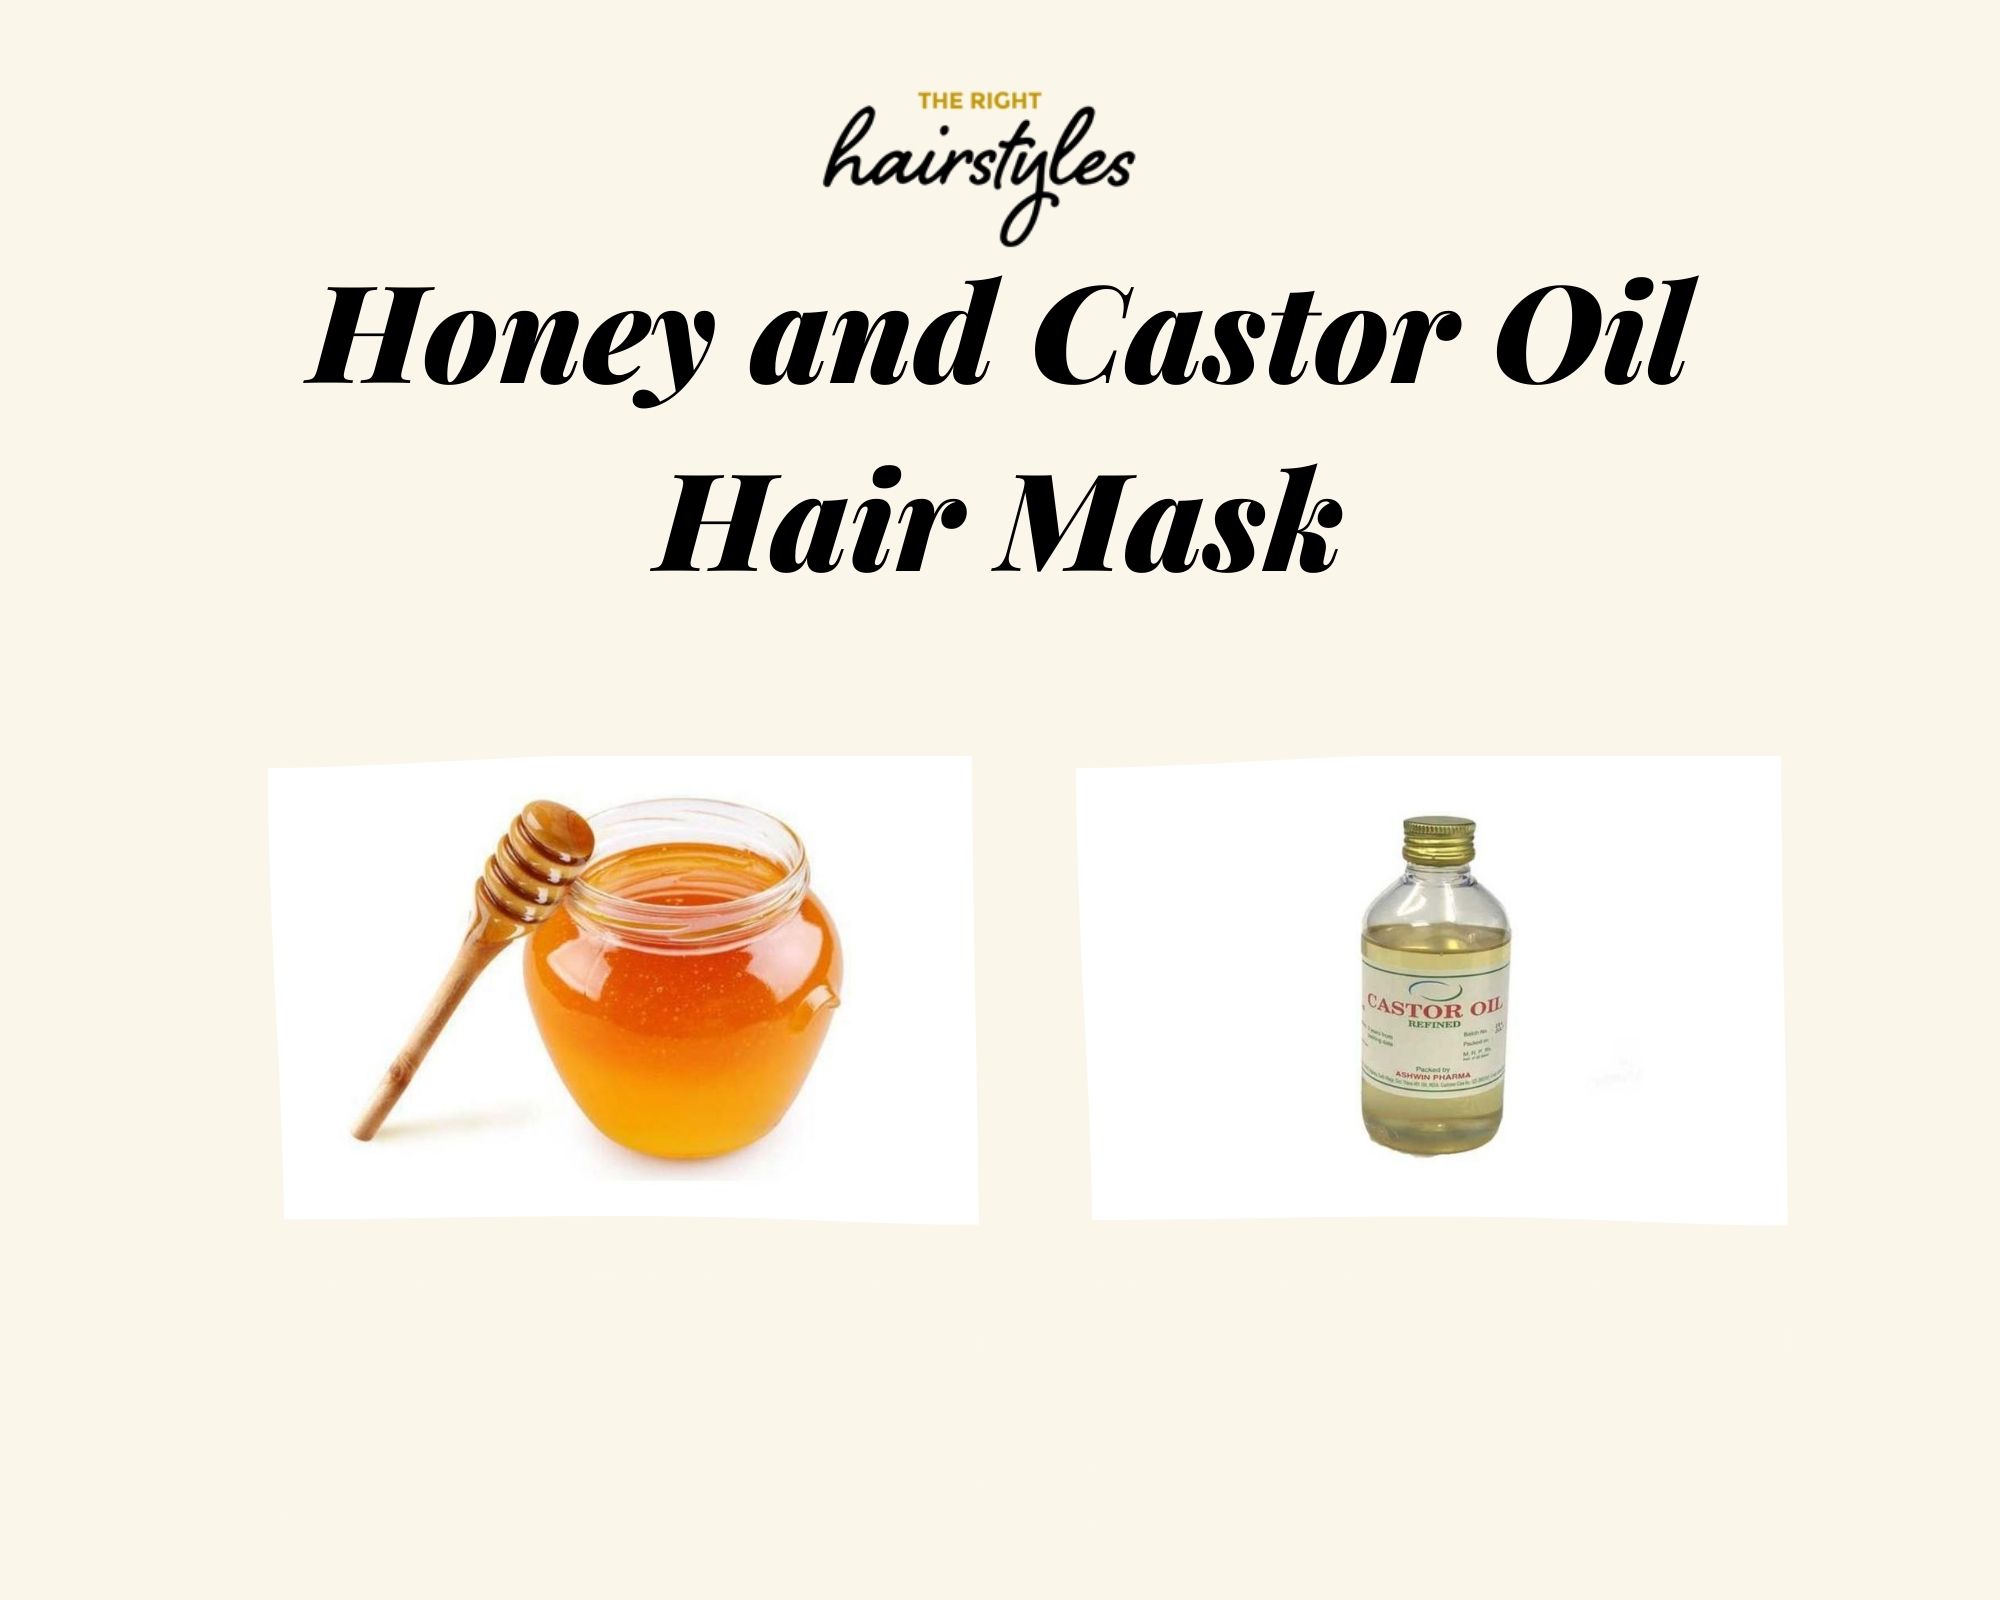 Honey and Castor Oil Mask